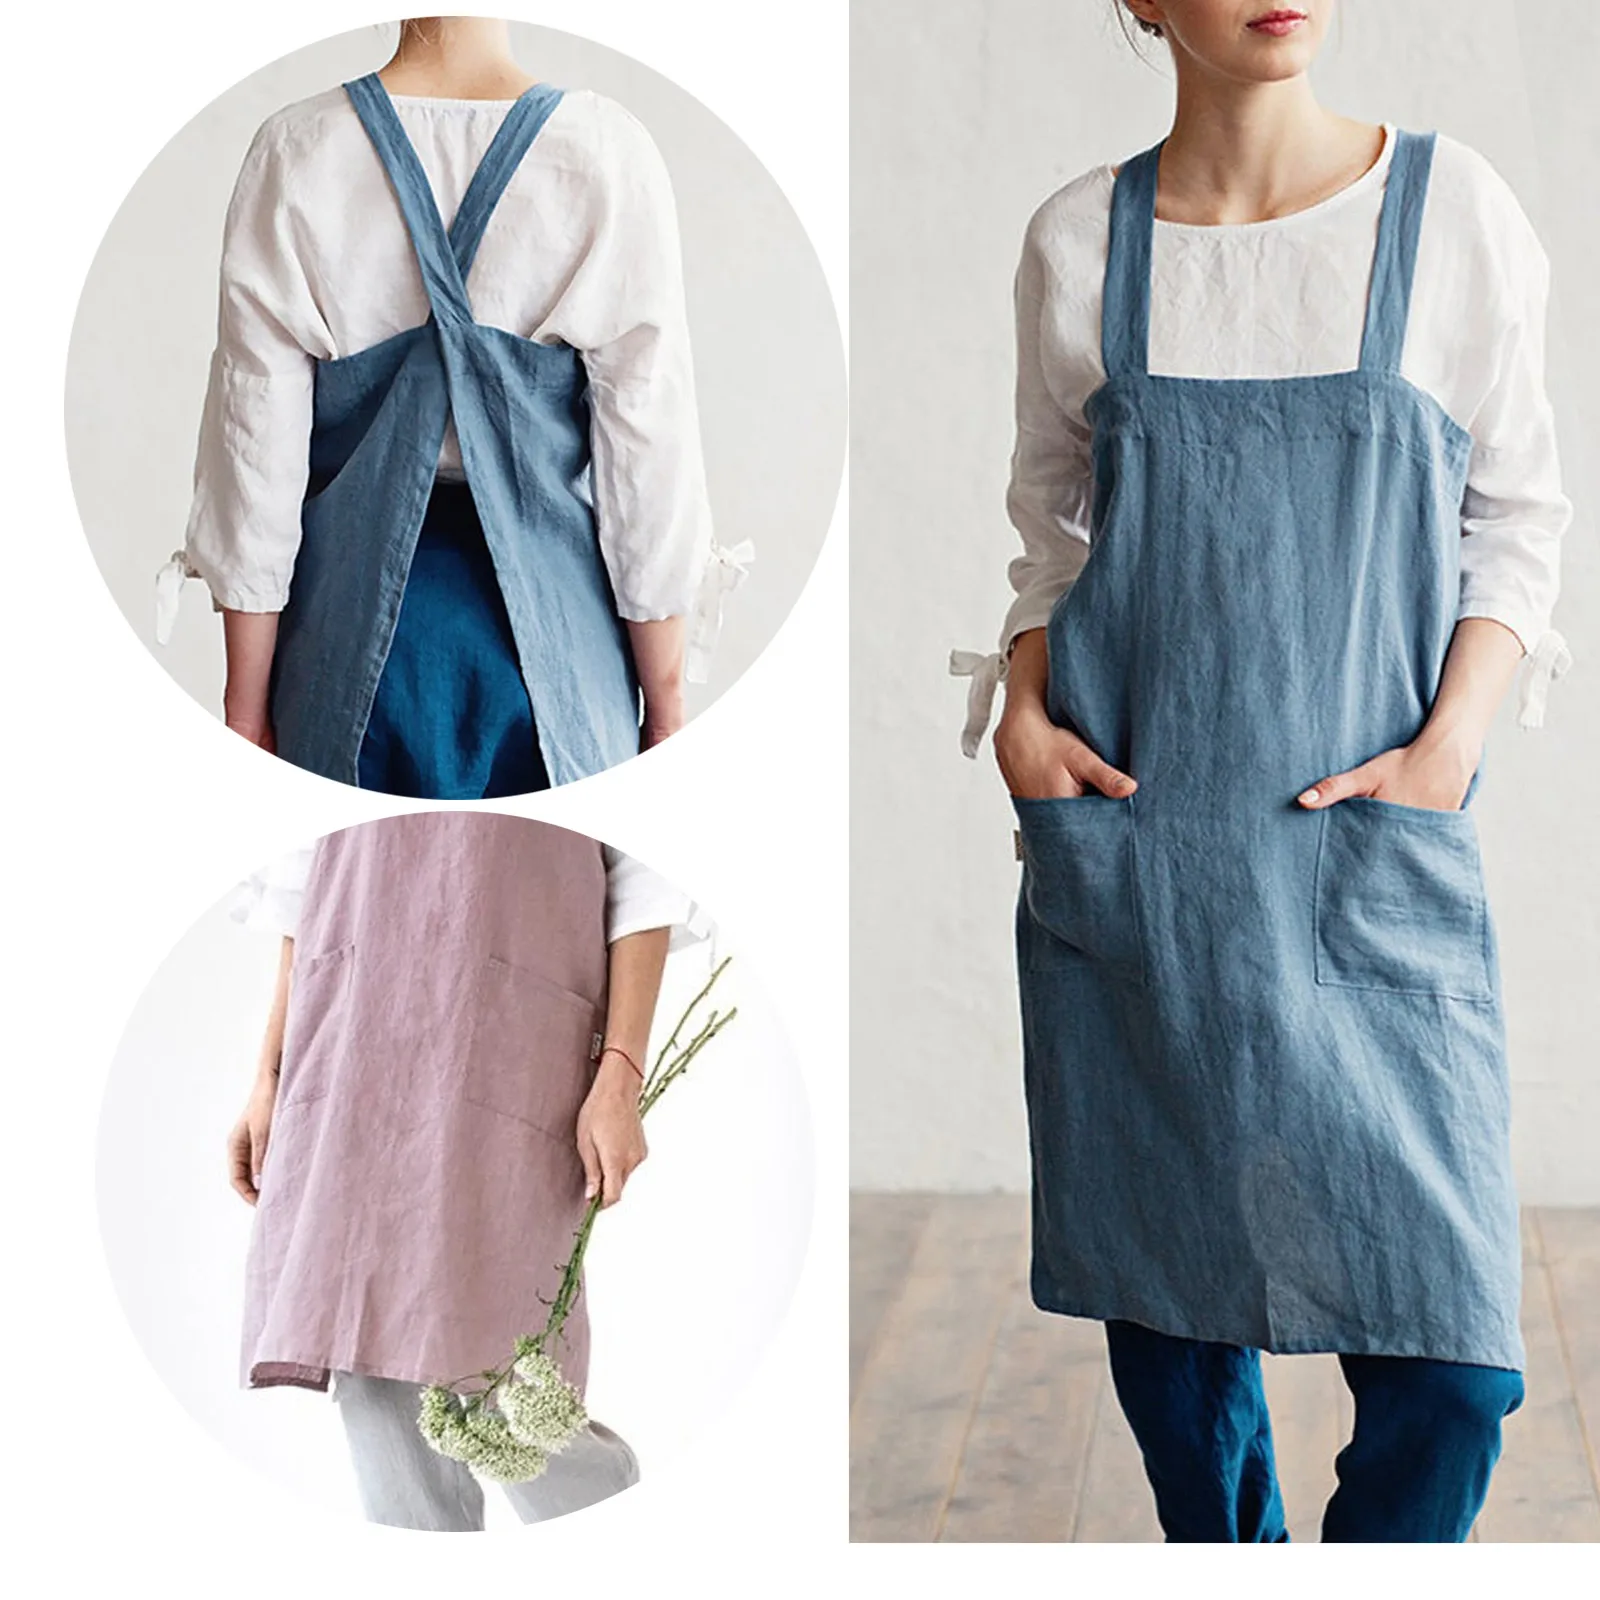 NLUS Delantal de algodón para mujer con bolsillos, delantal cruzado  trasero, delantal japonés, lindo delantal para cocinar jardinería